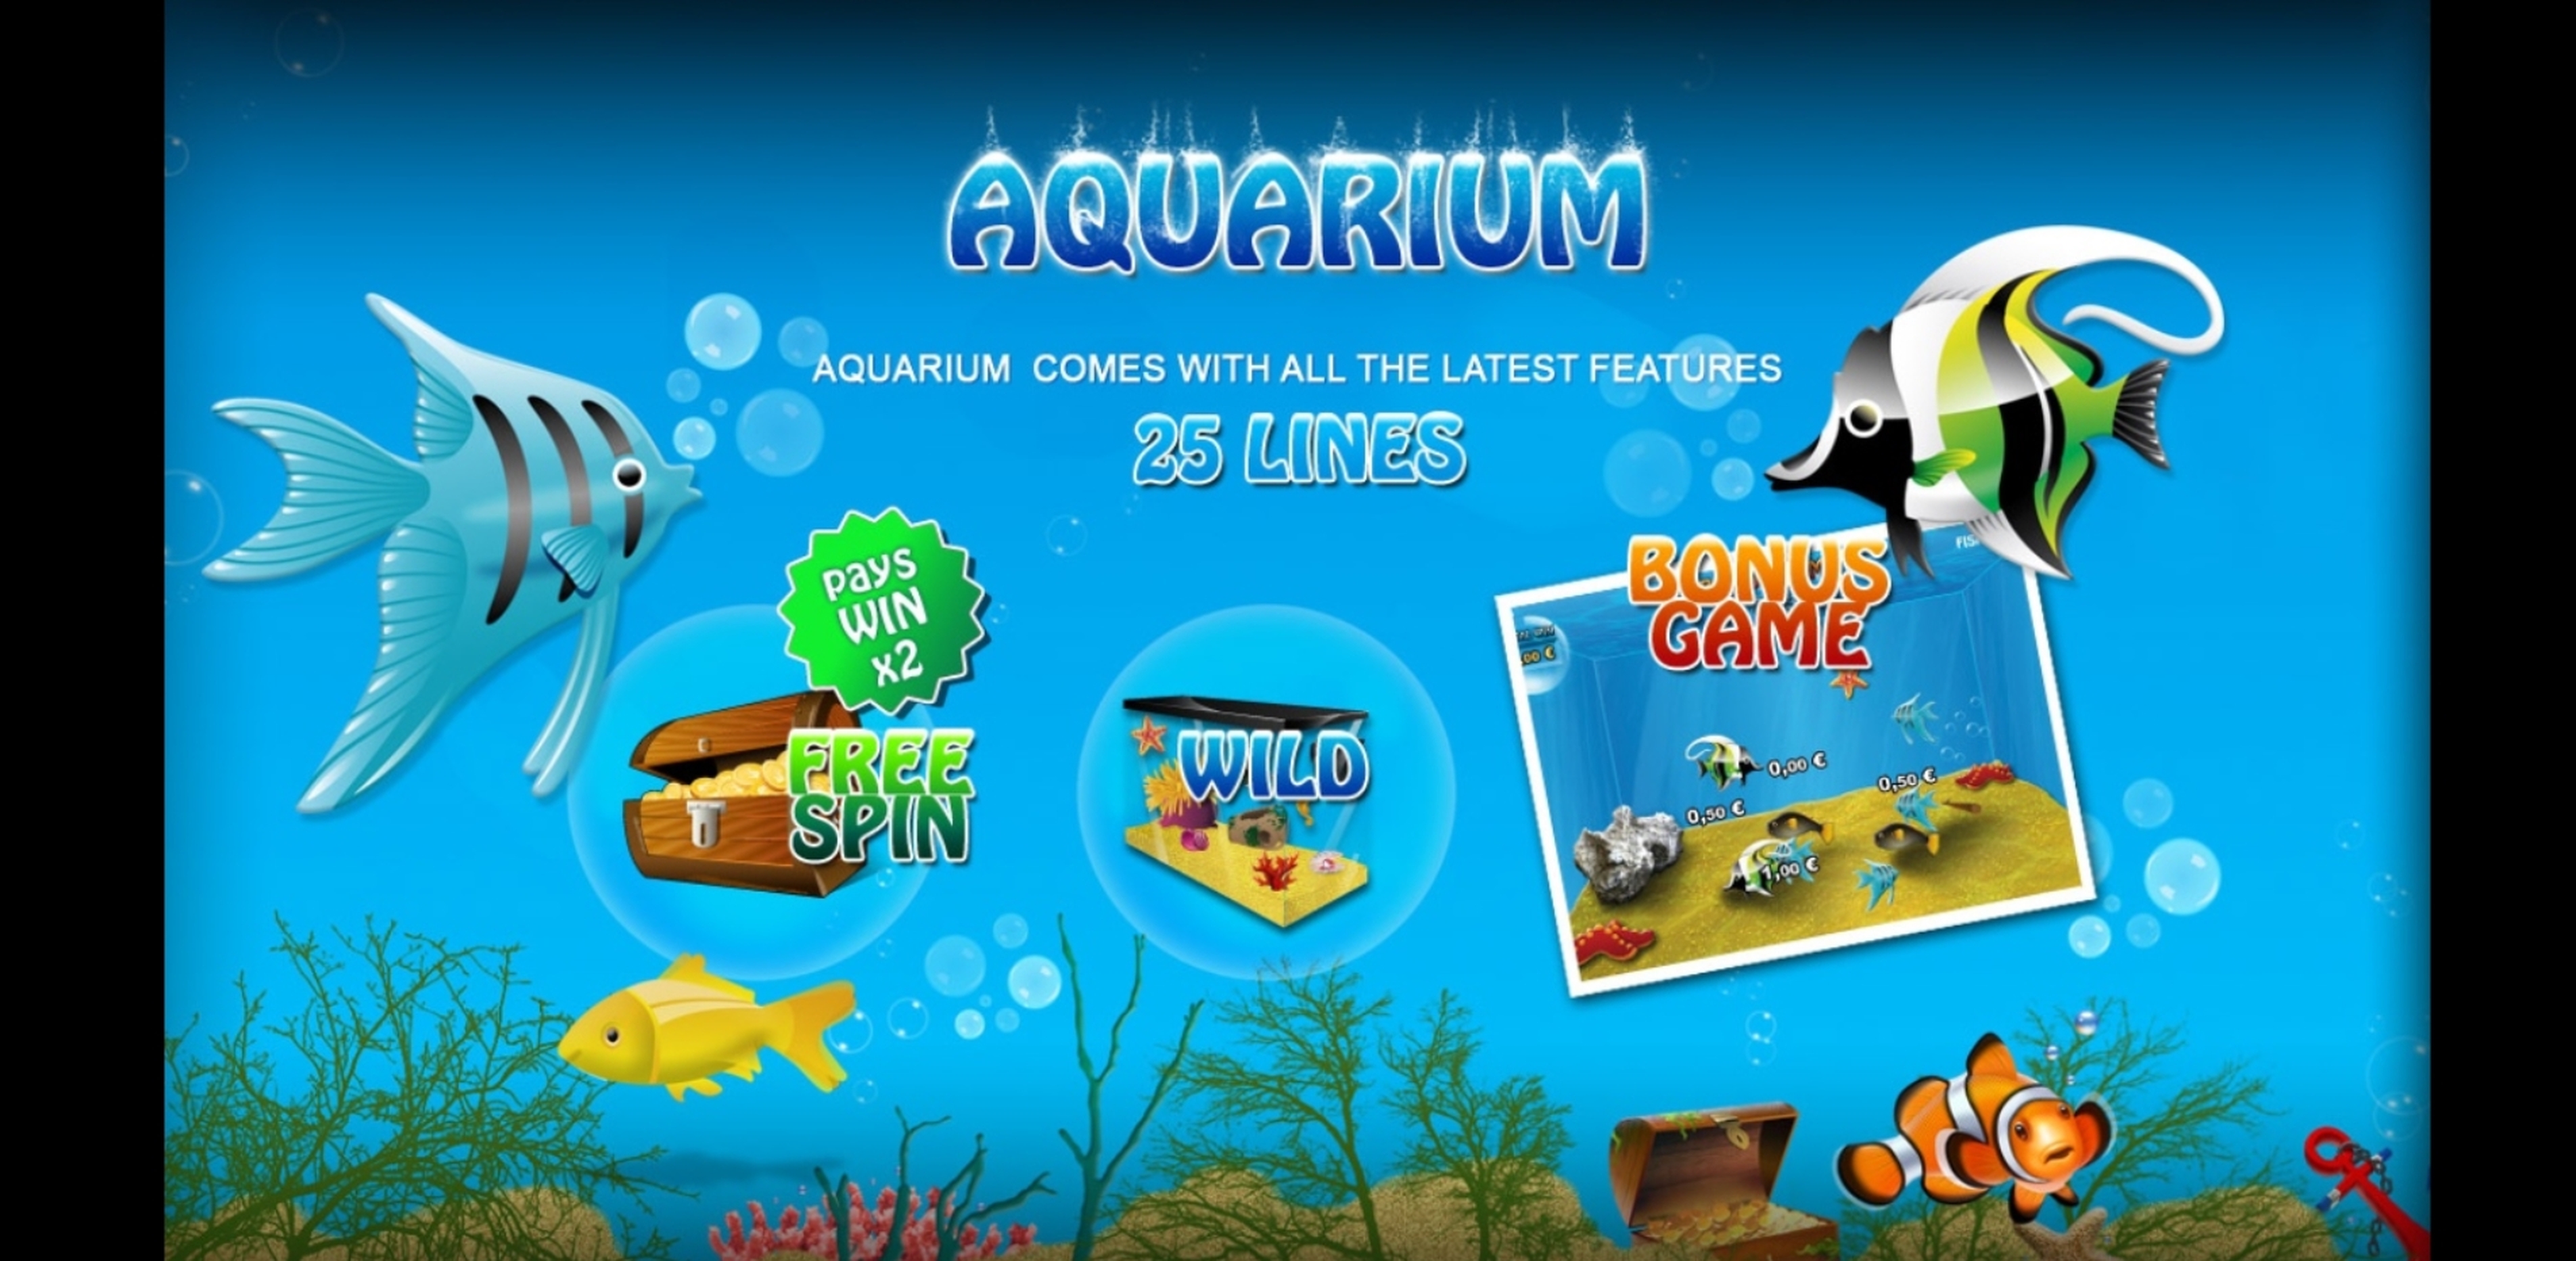 Play Aquarium Free Casino Slot Game by Playson